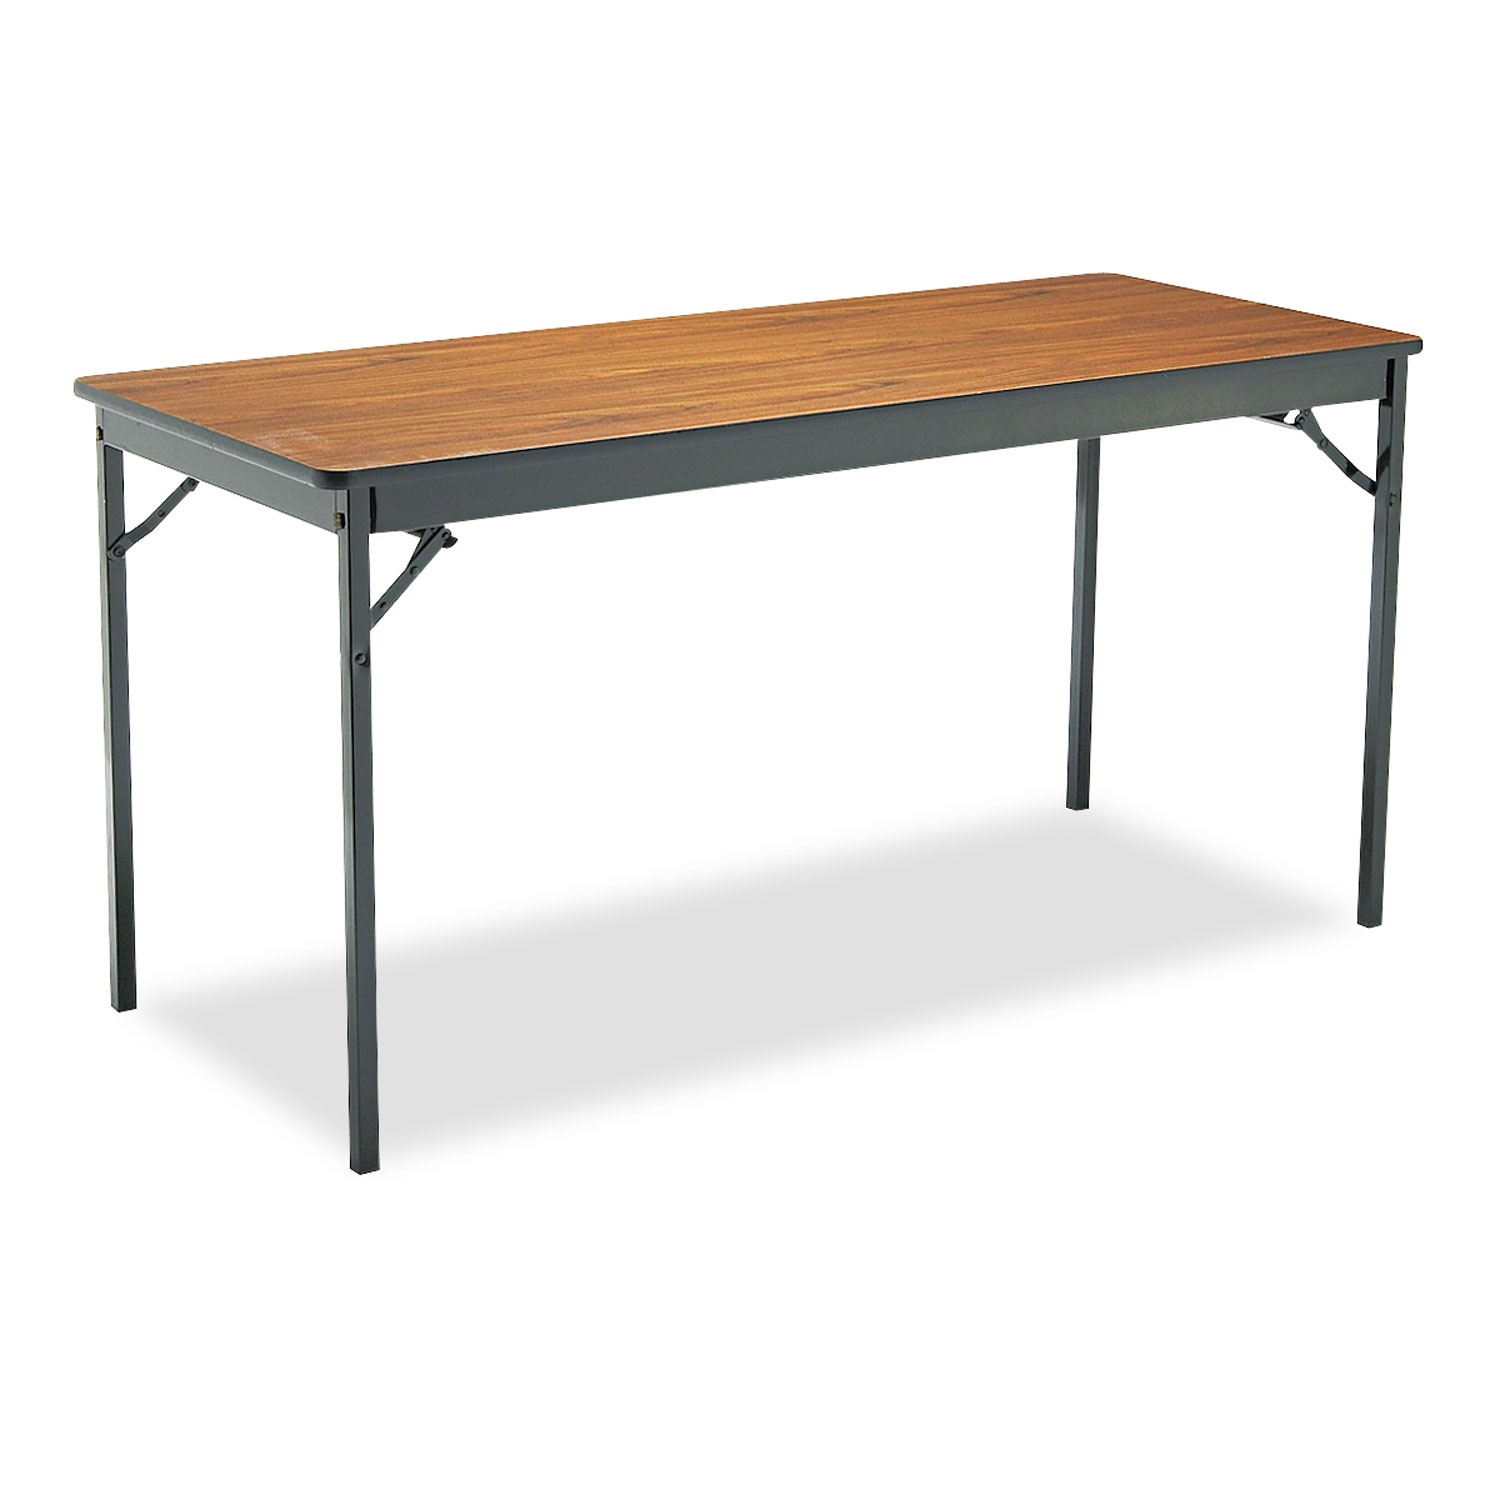  Barricks CL2460WA Special Size Folding Table, Rectangular, 60w x 24d x 30h, Walnut/Black (BRKCL2460WA) 